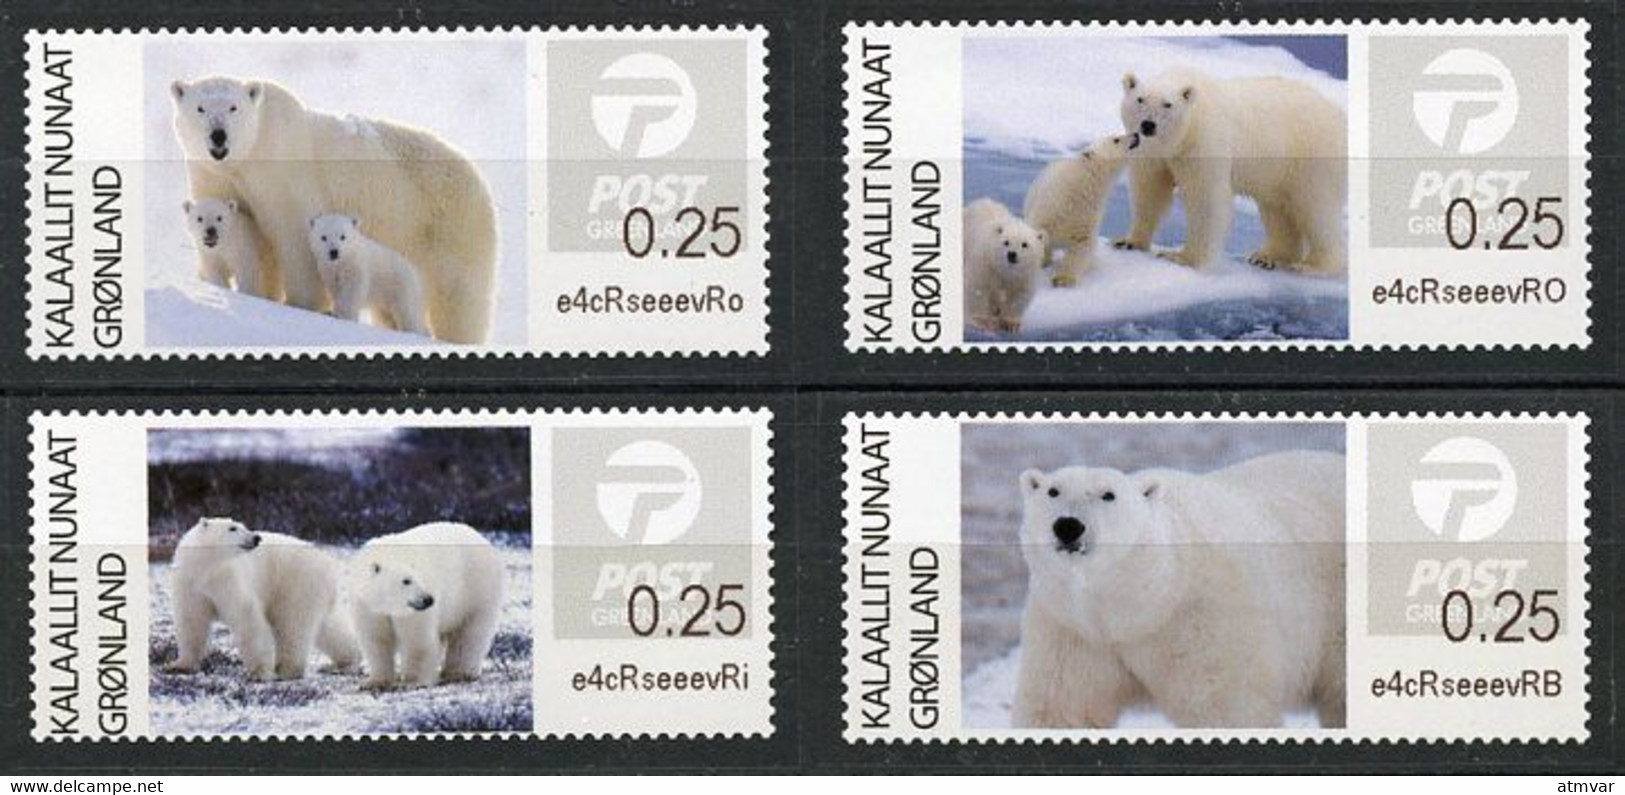 GREENLAND GROENLAND (2019) - ATM Series - Polar Bears, Der Eisbär, Ours Blanc, Oso Polar (Ursus Thalarctos Maritimus) - Frankeervignetten